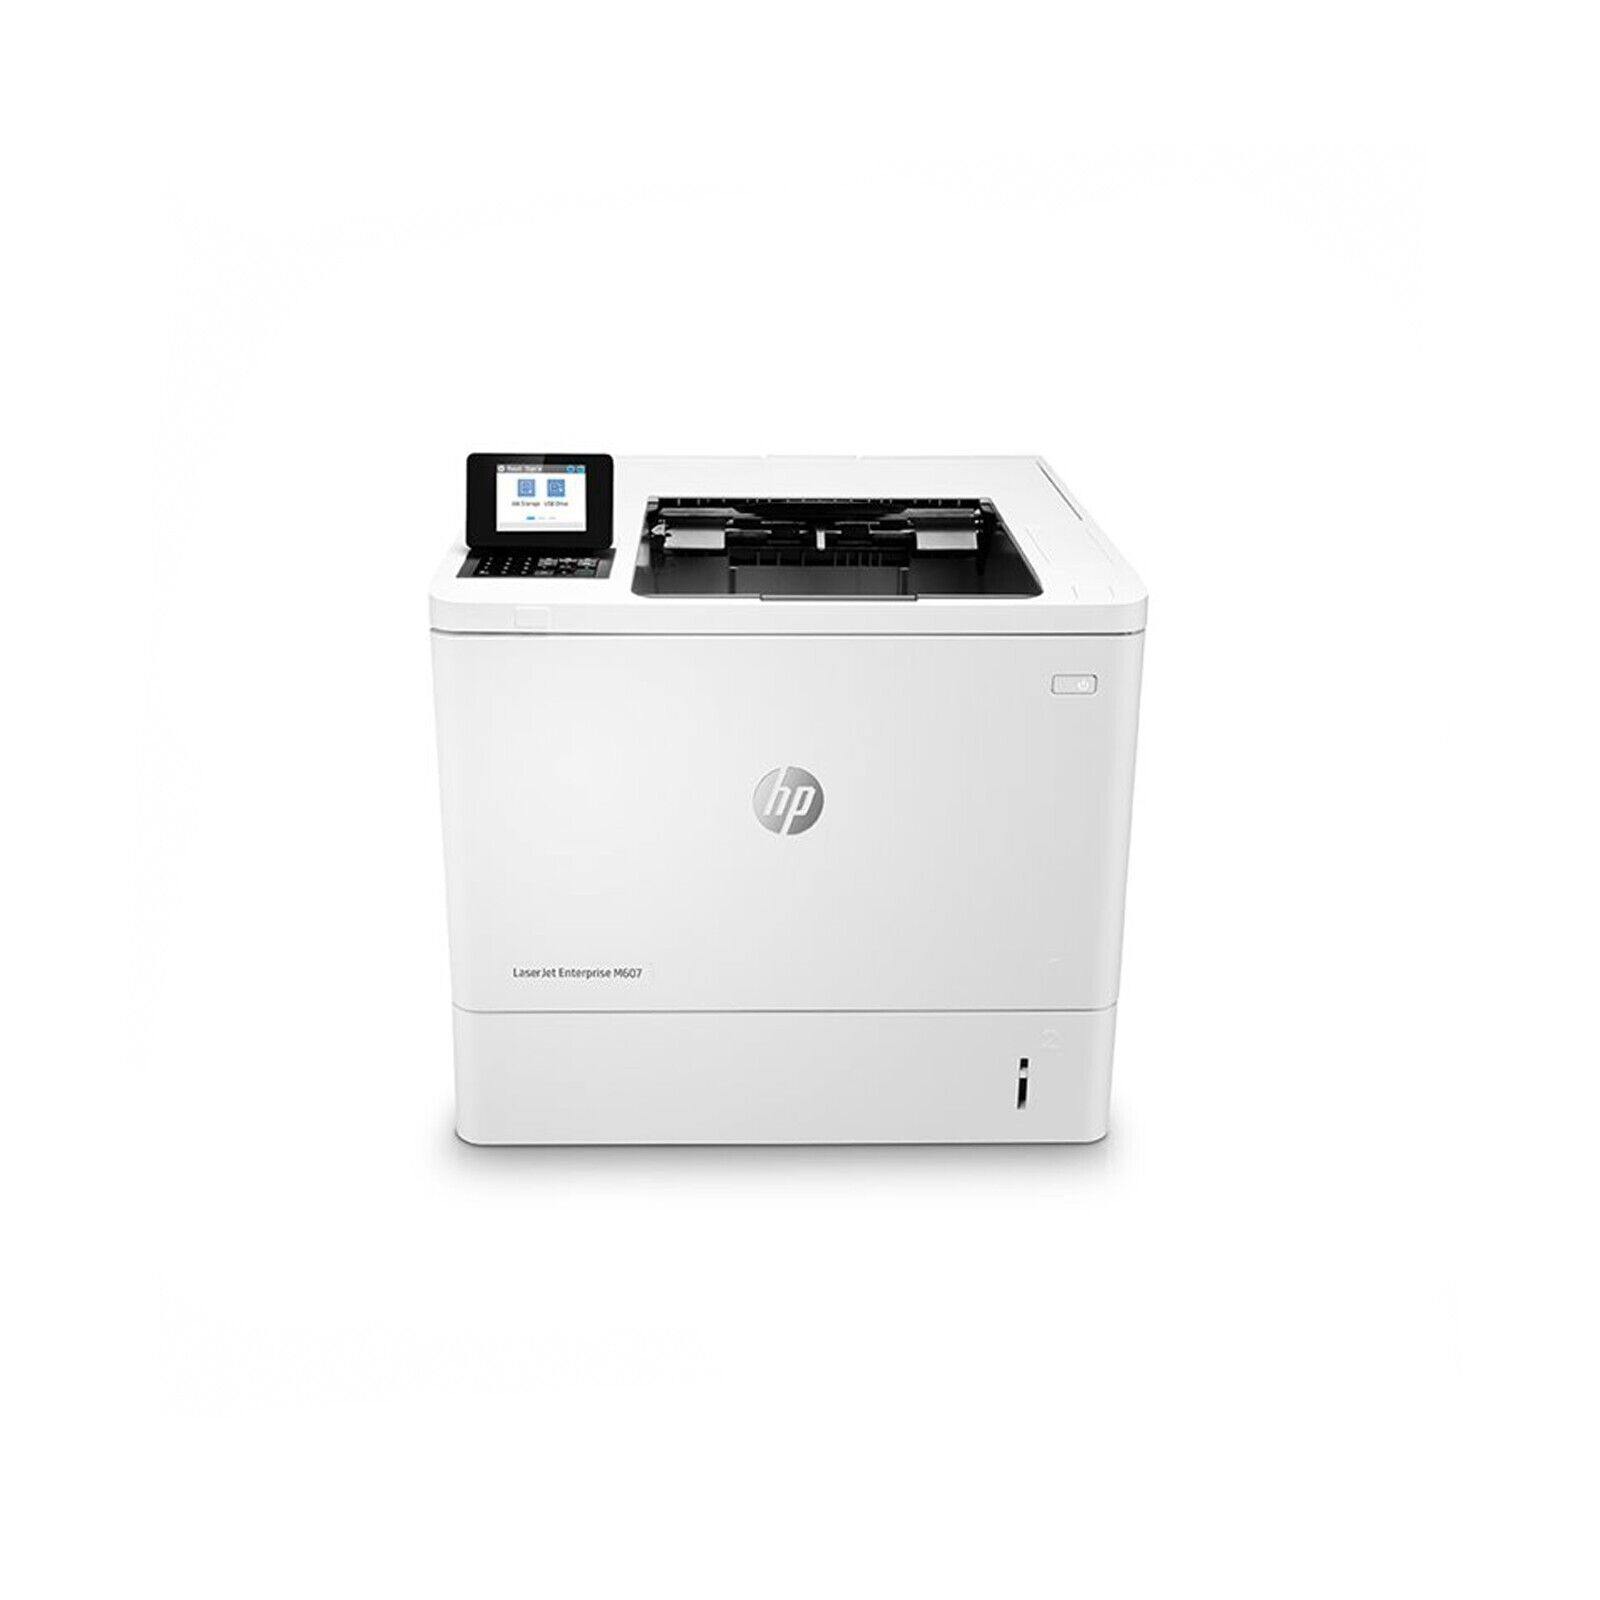 Brand New HP LaserJet Enterprise M607n Monochrome Printer, K0Q14A